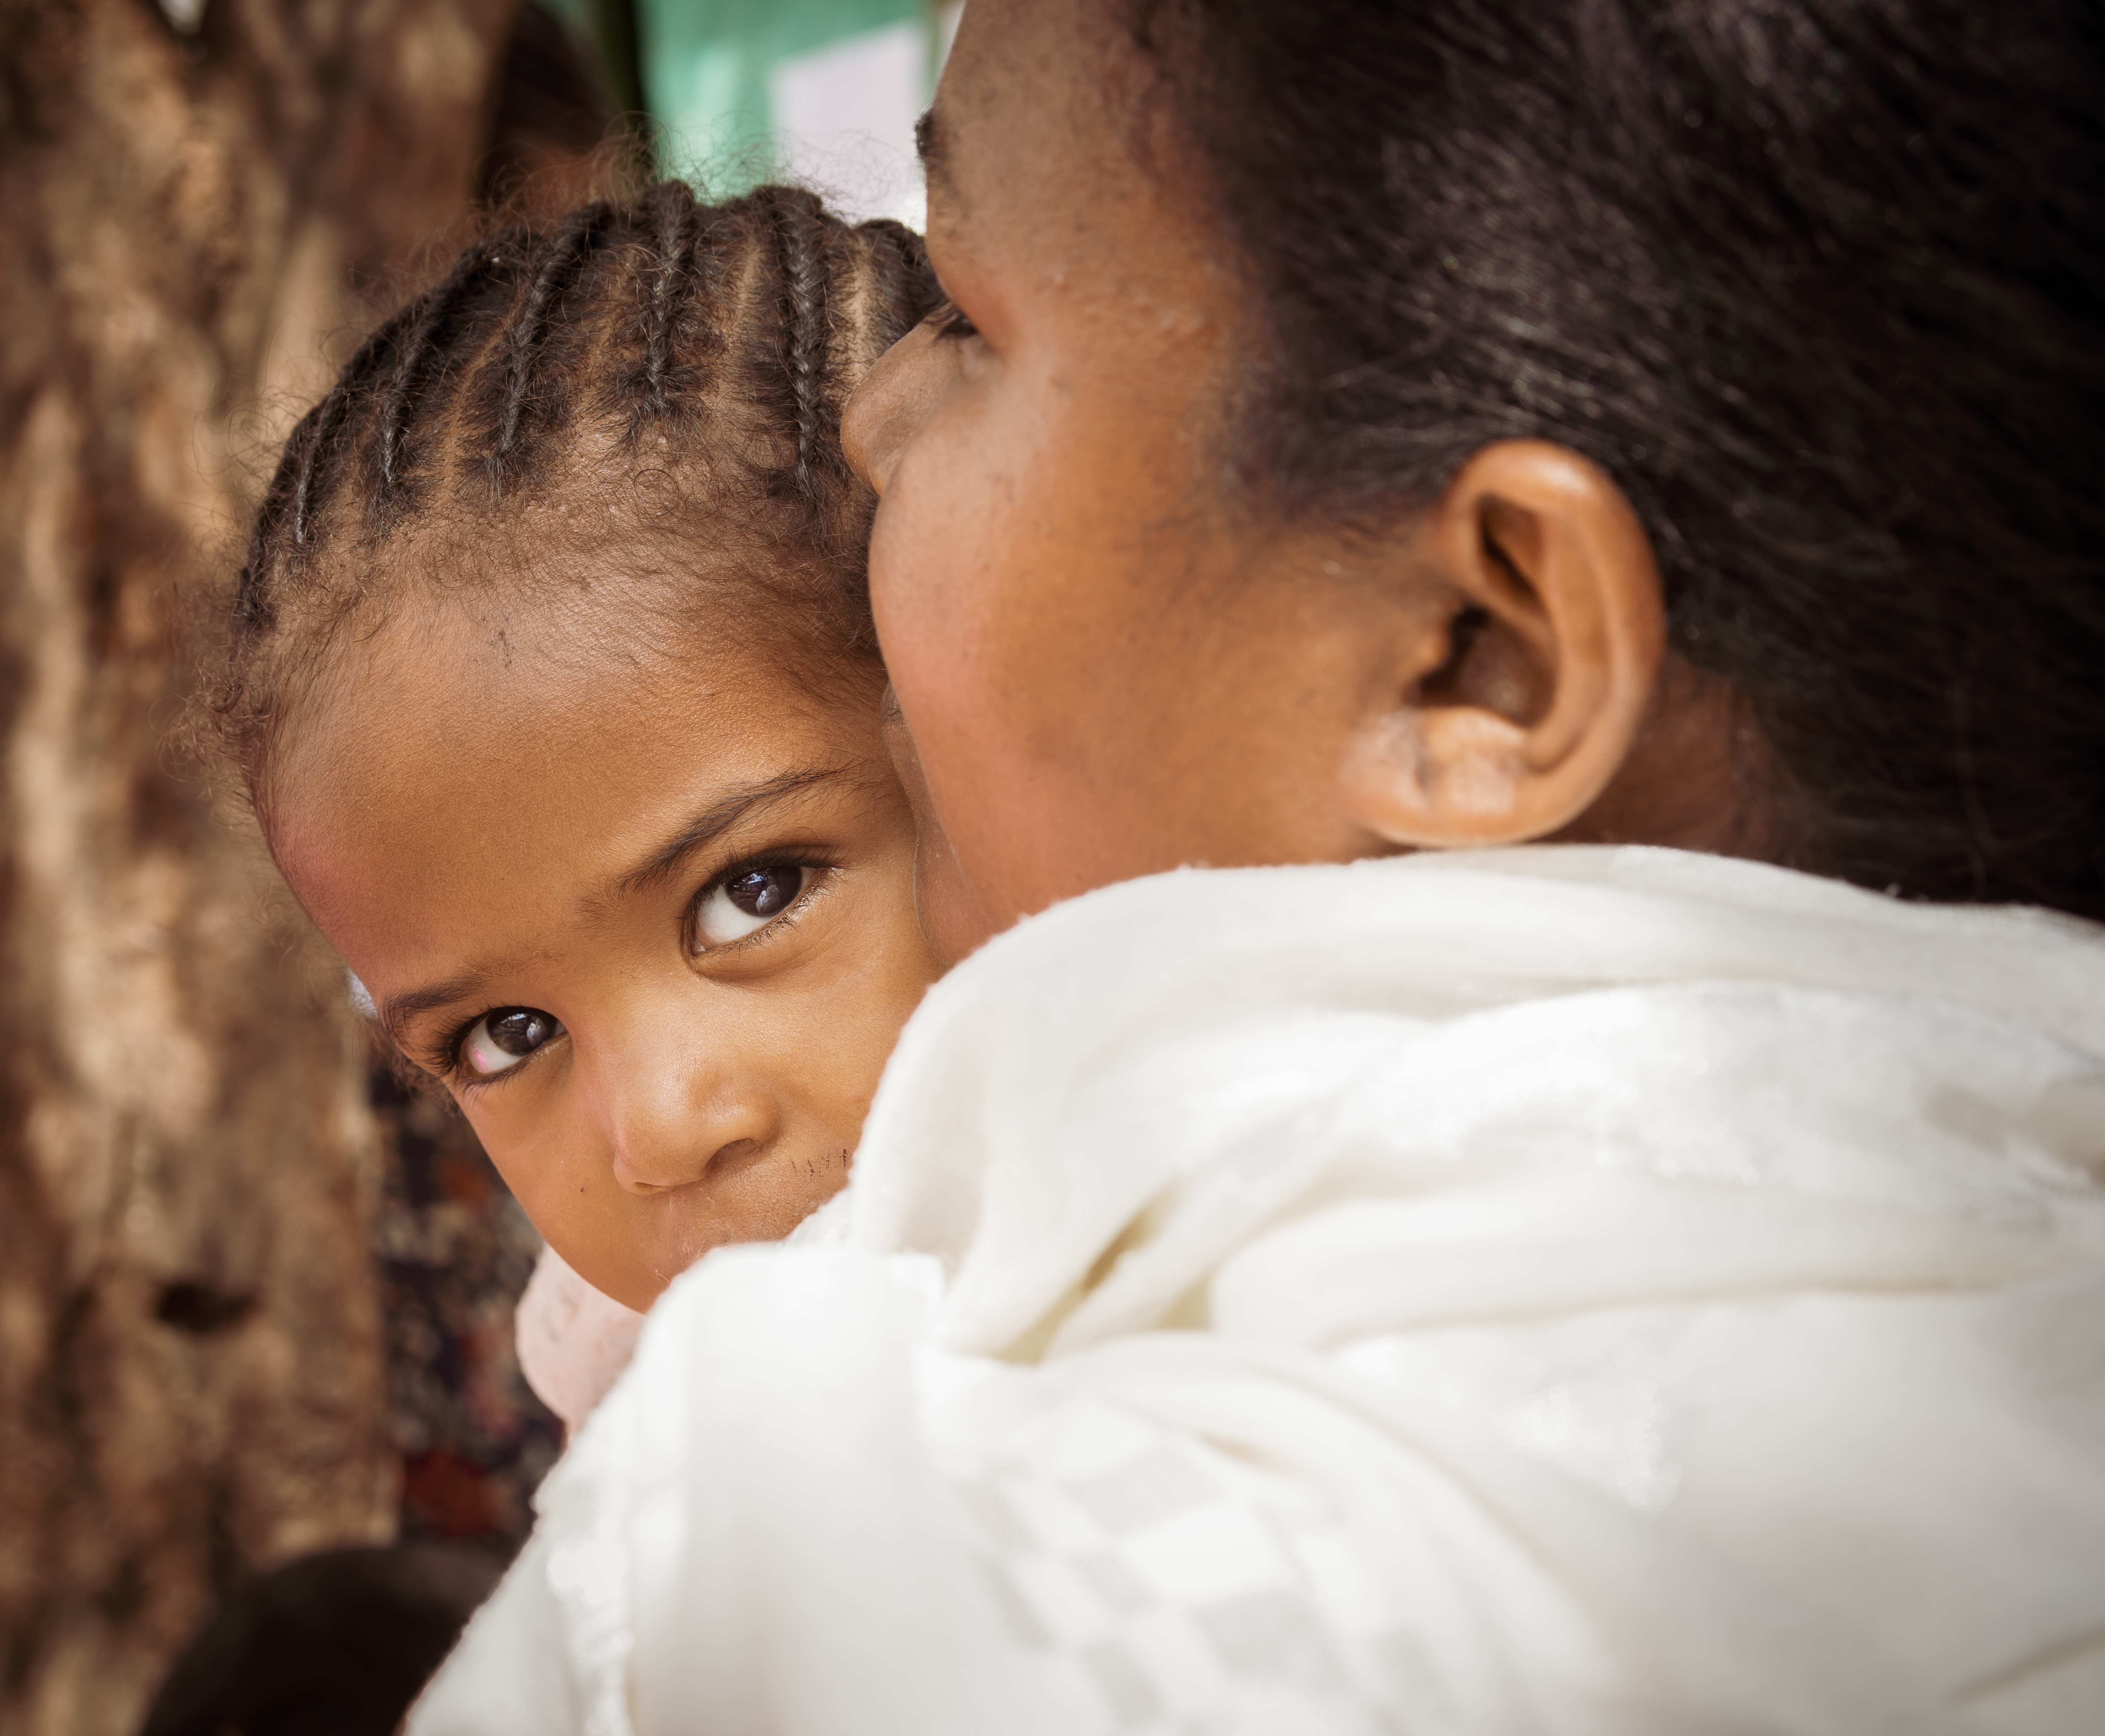 Äthiopische Frau mit Kind (Quelle: Jakob Studnar)